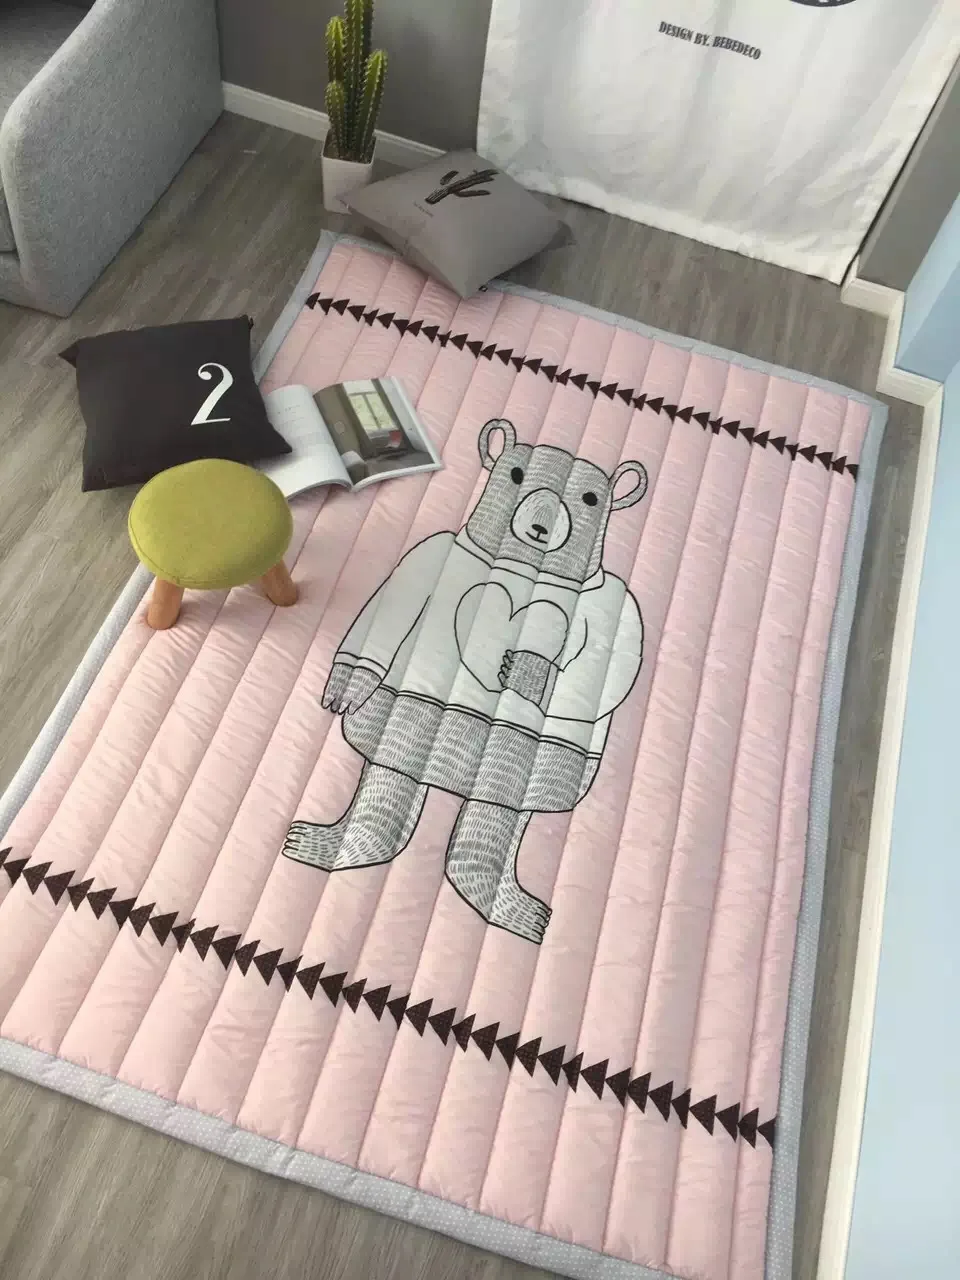 Ins мультяшный коврик мягкий складной детский коврик для лазания детское сиденье игровой игрушечный планшет одеяло - Цвет: Белый